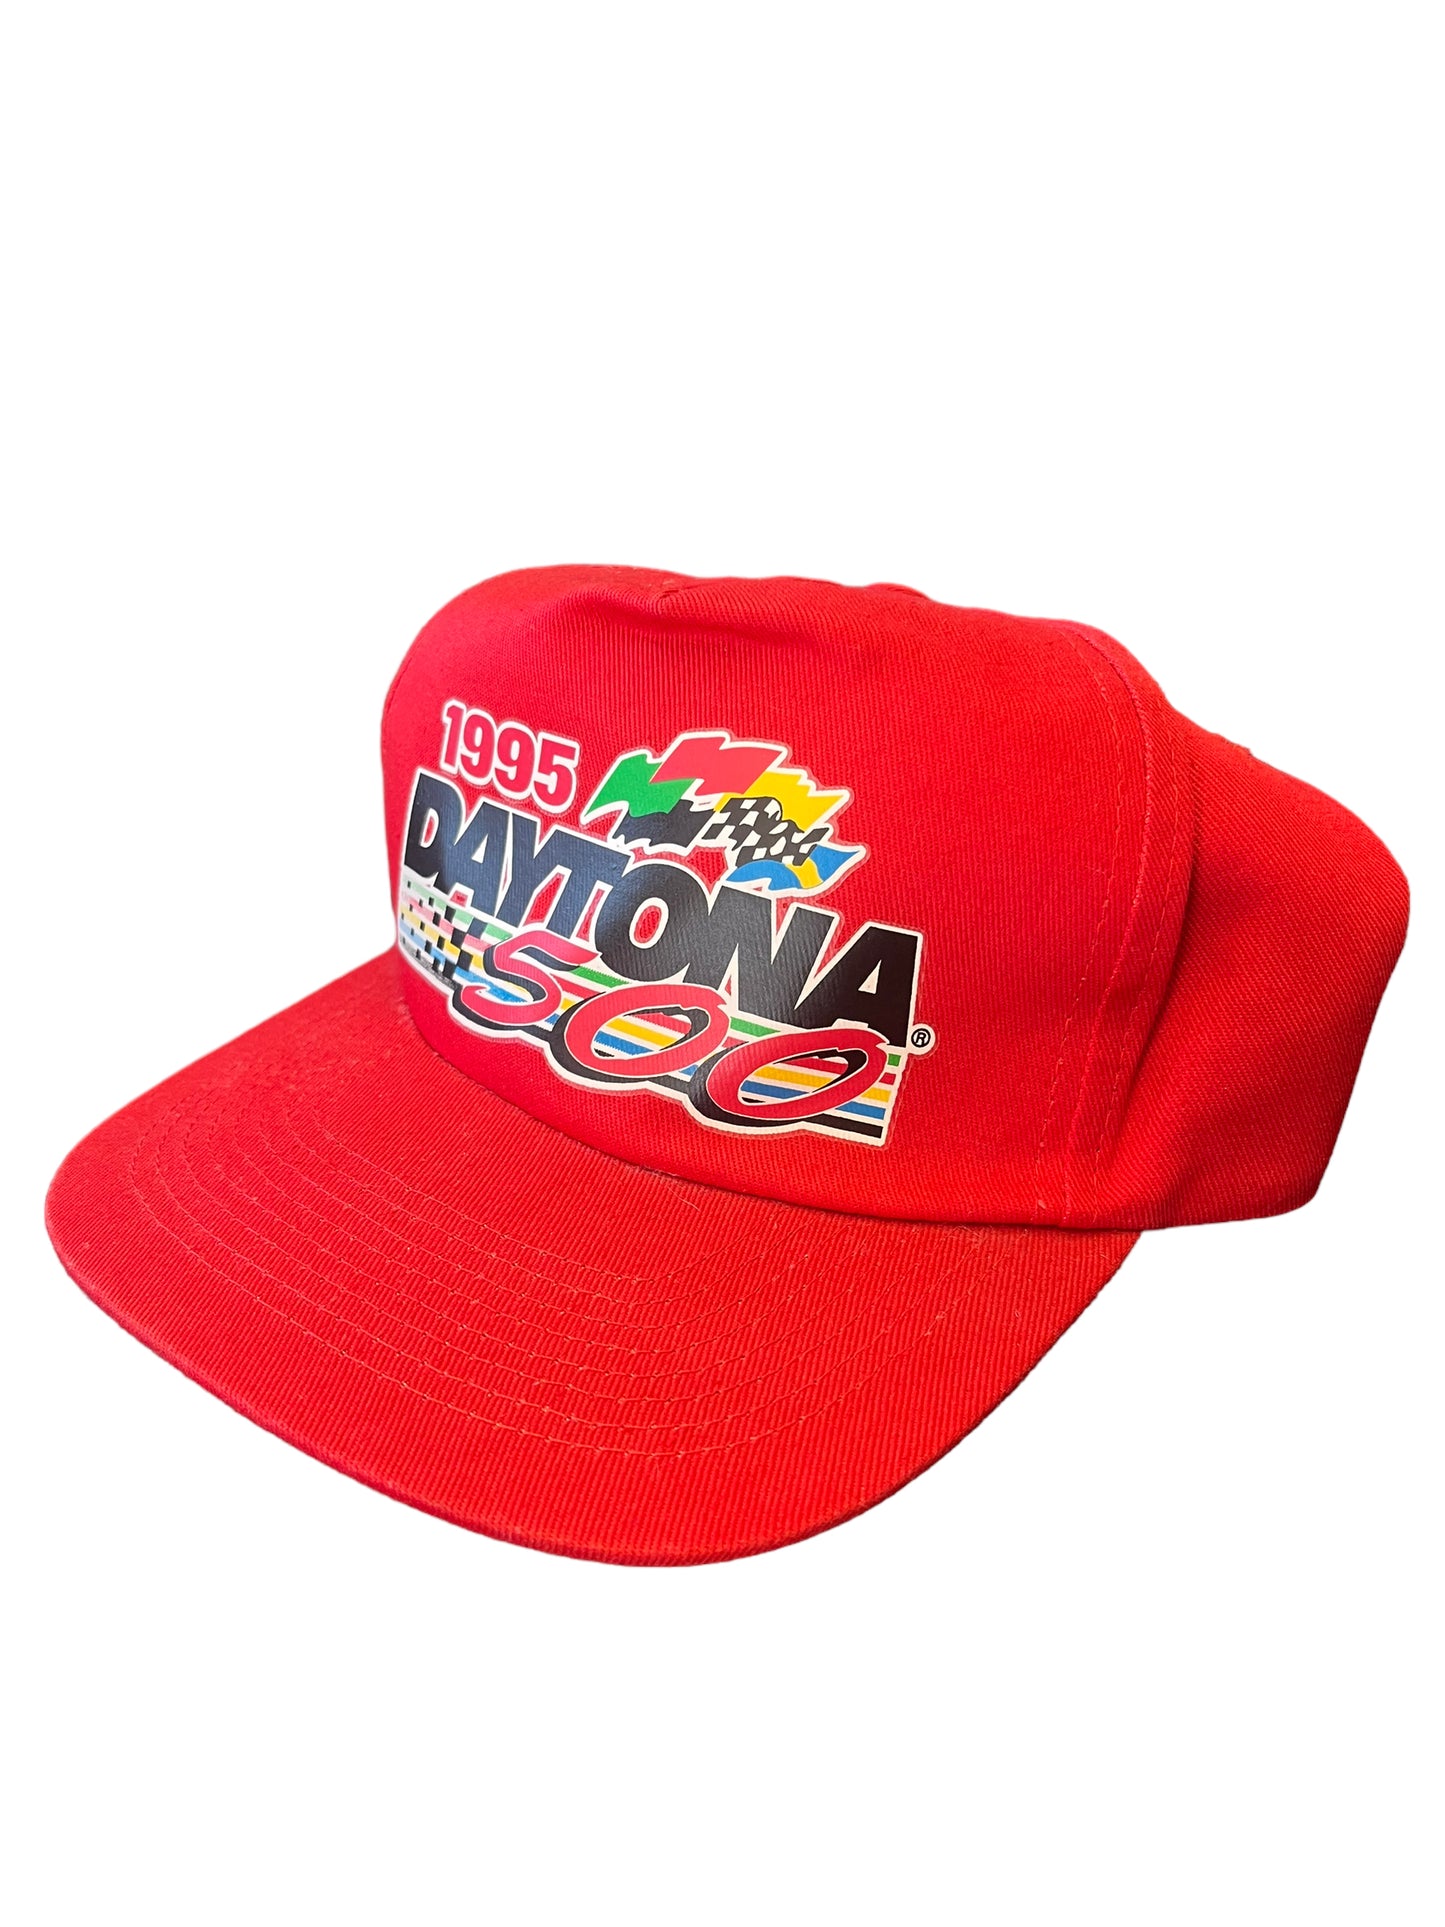 1995 Daytona 500 Hat